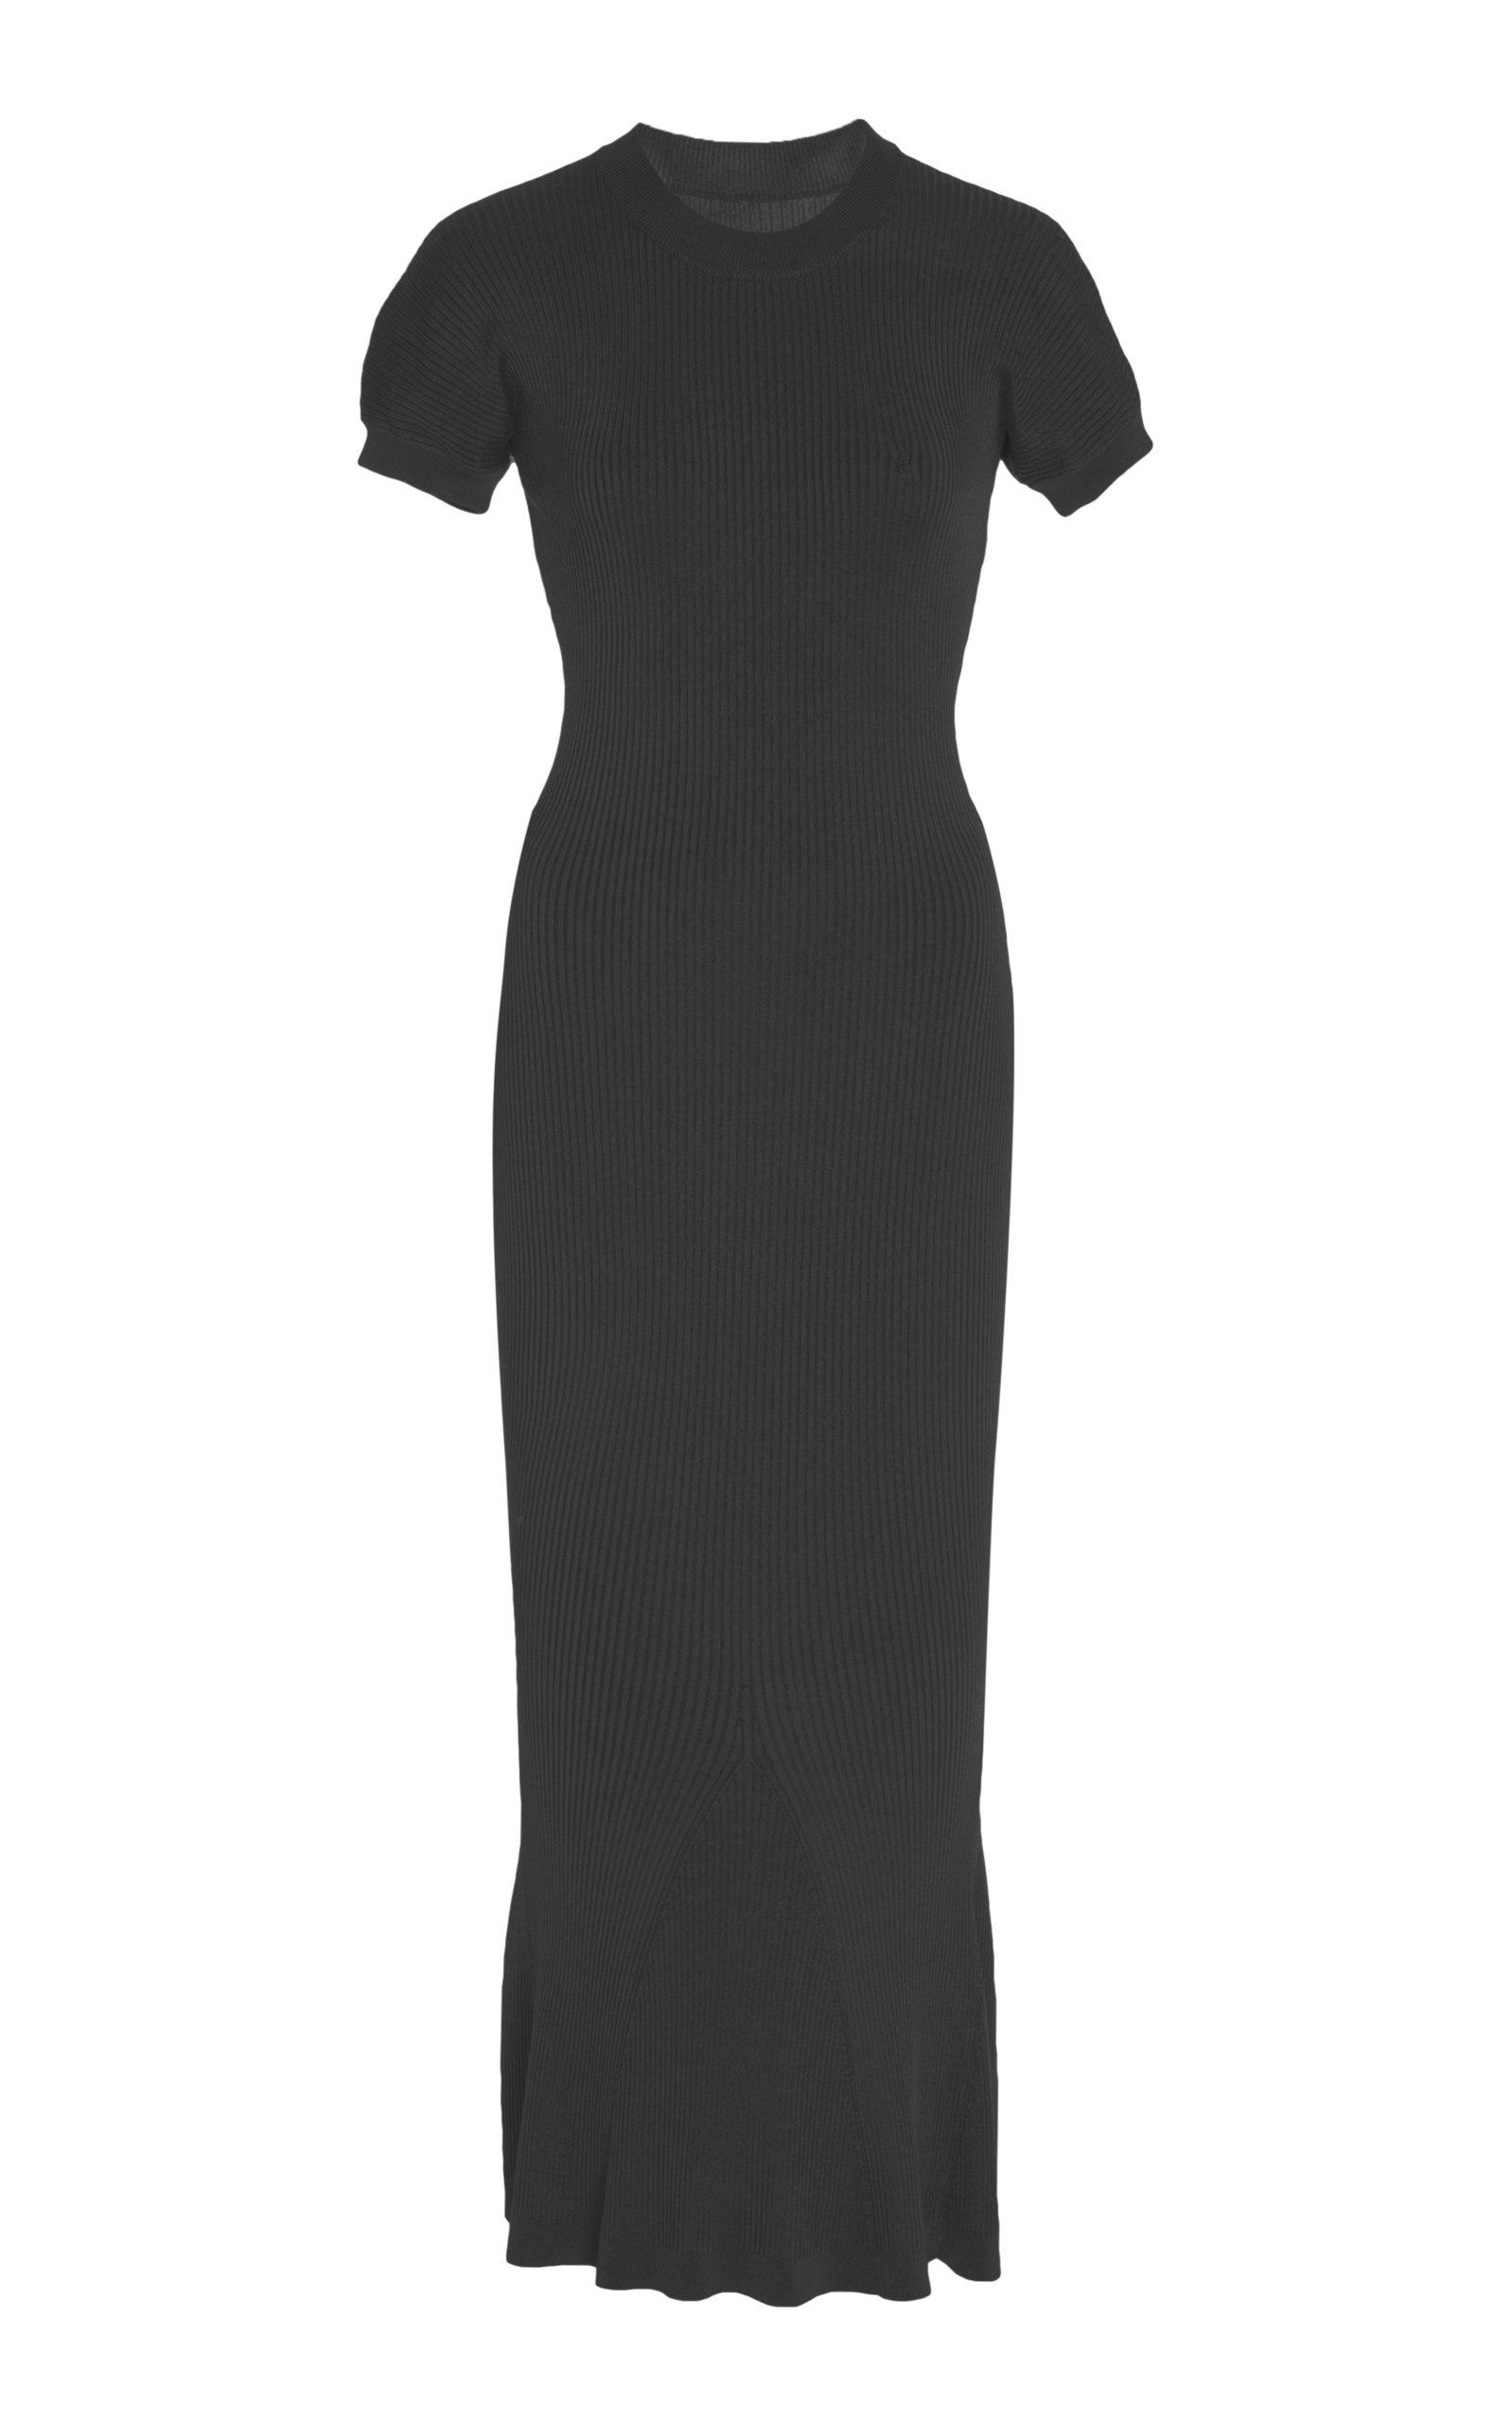 fitted black midi dress